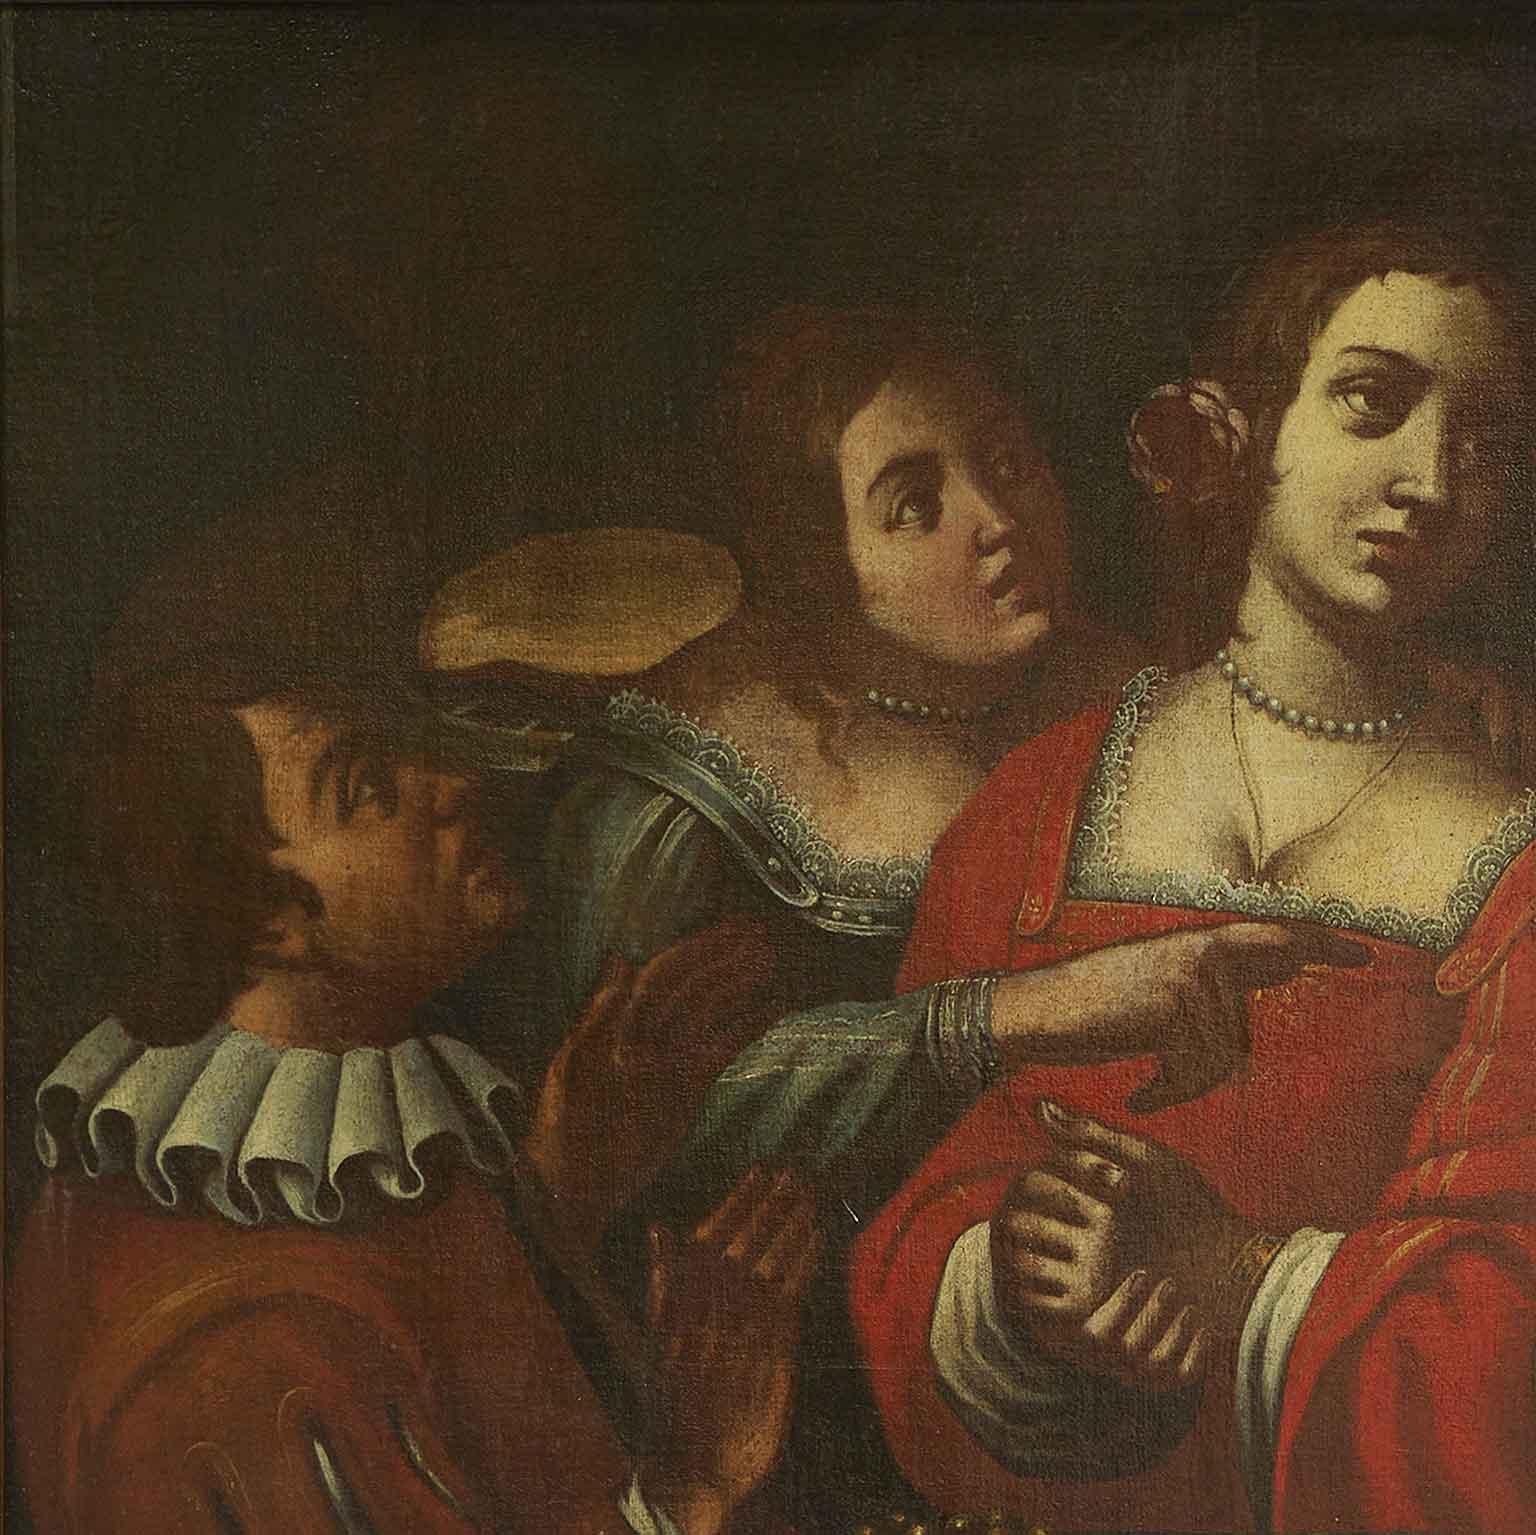 Peinture italienne du XVIIe siècle Banquet avec figures Memento Mori de Giovanni Martinelli, intitulée La mort arrive à la table du banquet,  vanité d'environ 1635. La peinture à l'huile sur toile s'inspire de l'œuvre la plus célèbre du peintre